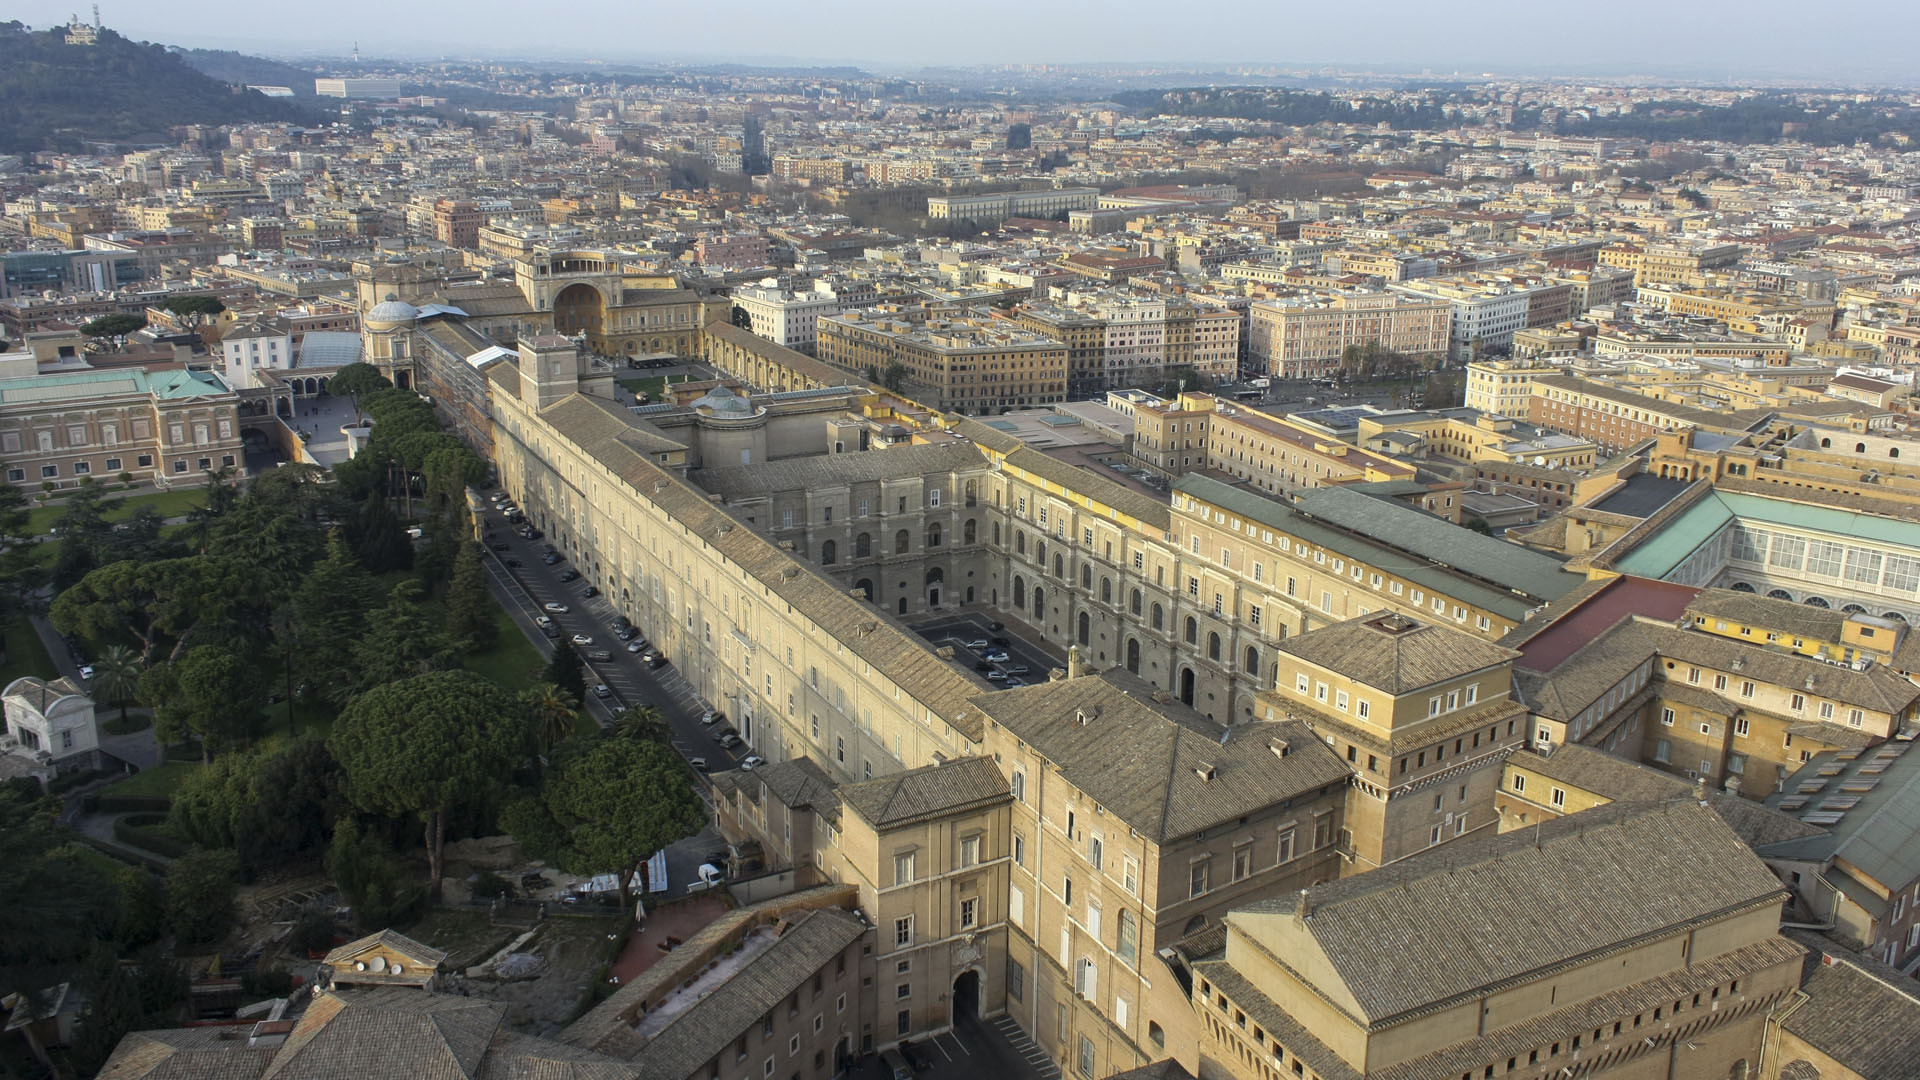 La pharmacie du Vatican a été déplacée en 1929 au palais du Belvédère. (Photo: Flickr/
-JvL-/CC BY 2.0)